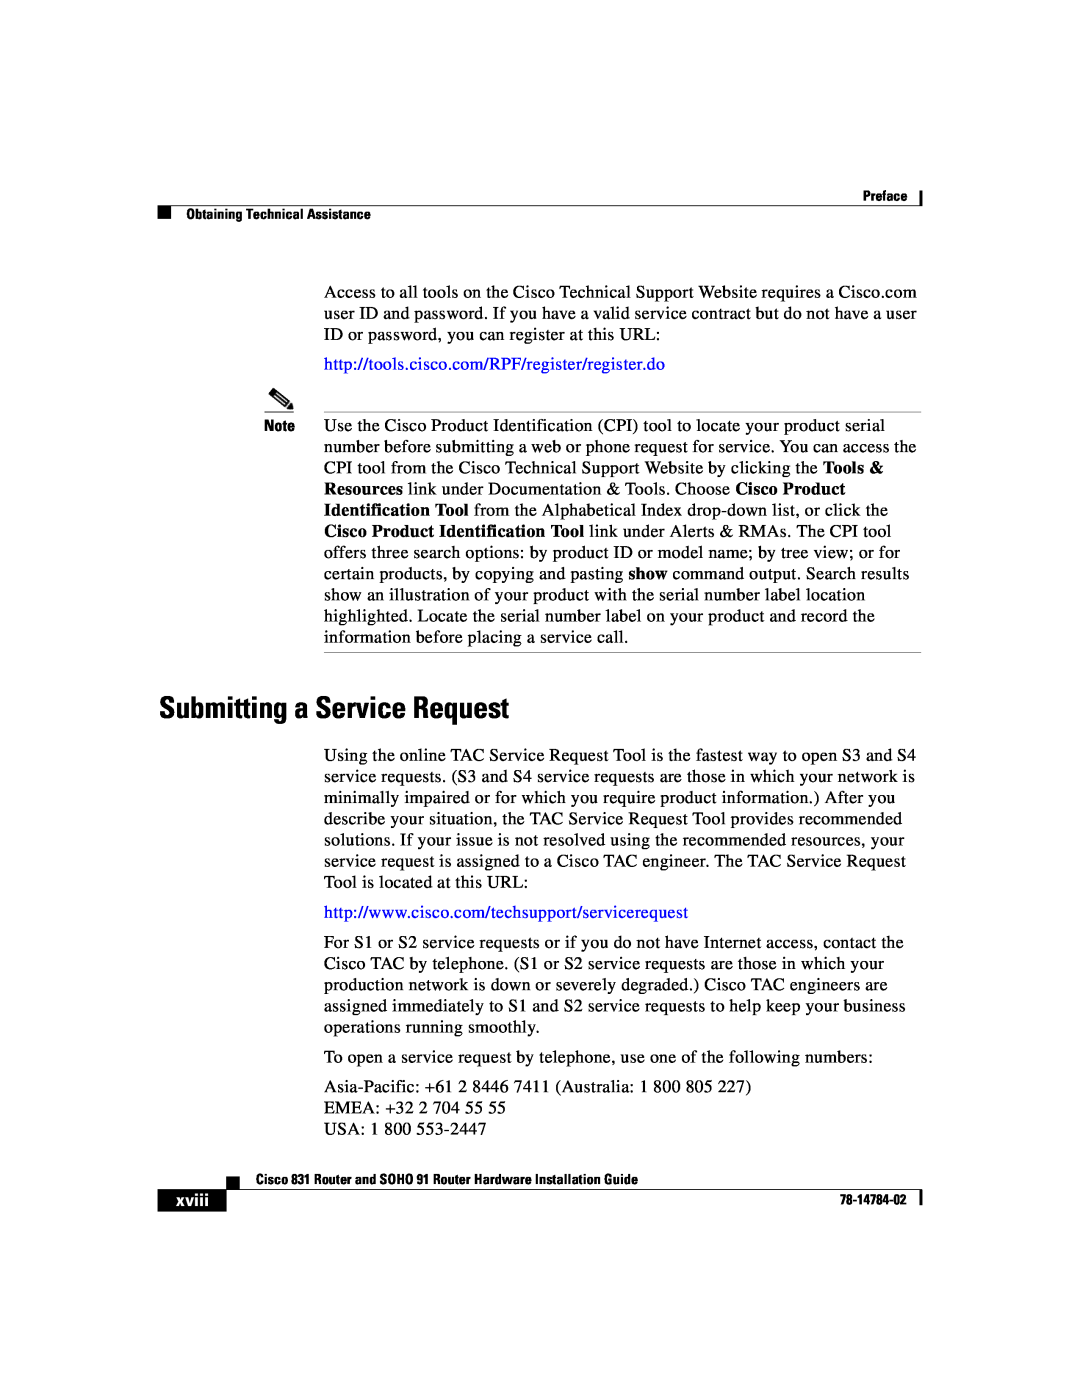 Cisco Systems 78-14784-02 manual Submitting a Service Request, http//tools.cisco.com/RPF/register/register.do, xviii 